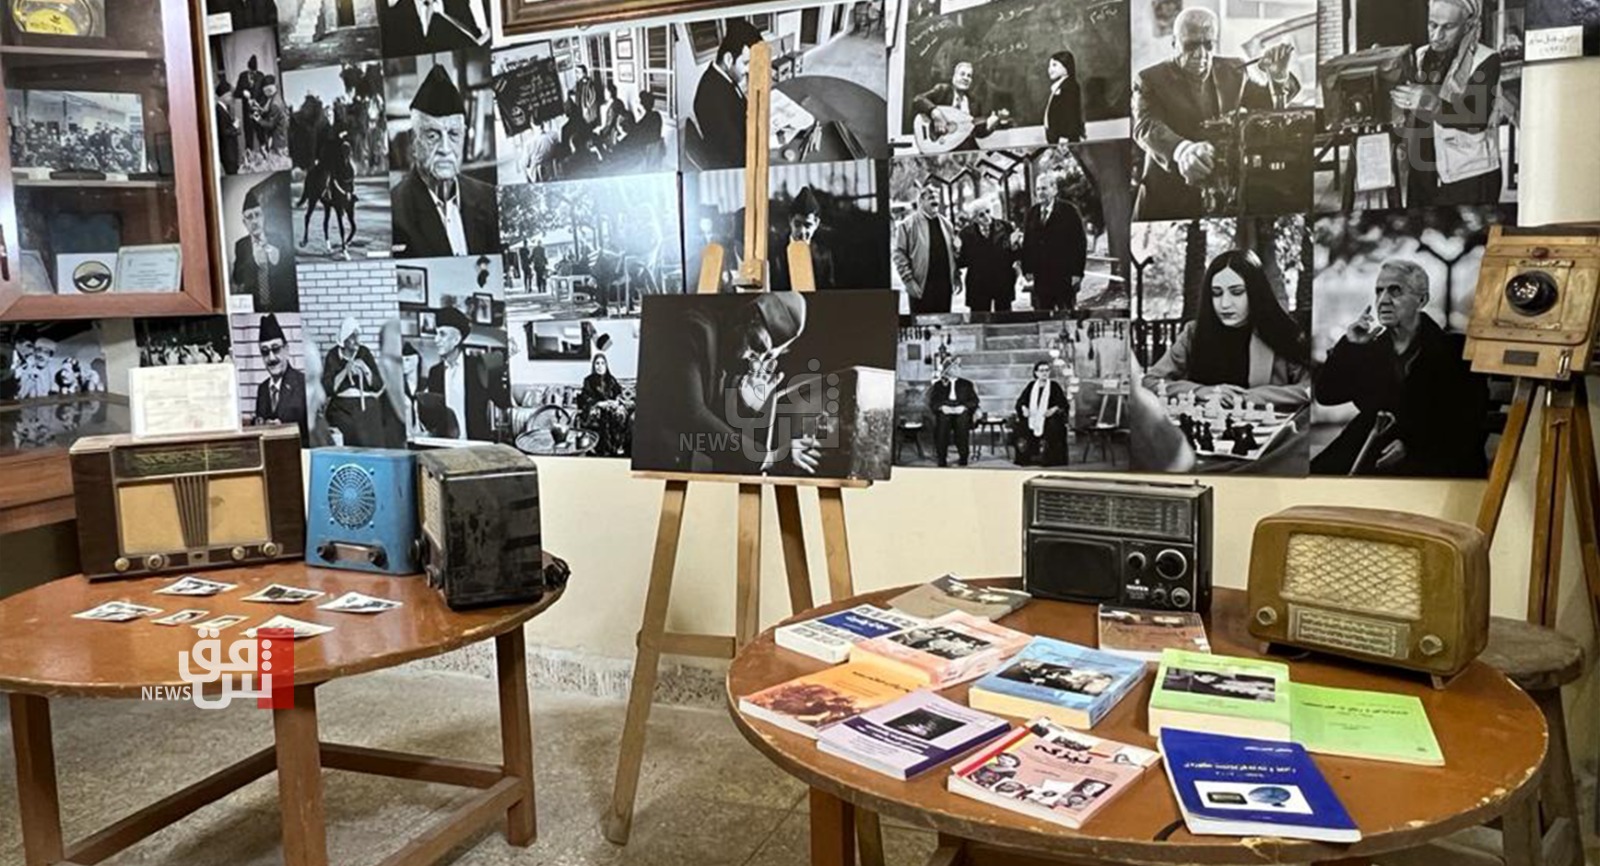 أربيل.. متحف يجمع ارشيف التربية والمعلمين خلال 100 عام (صور)